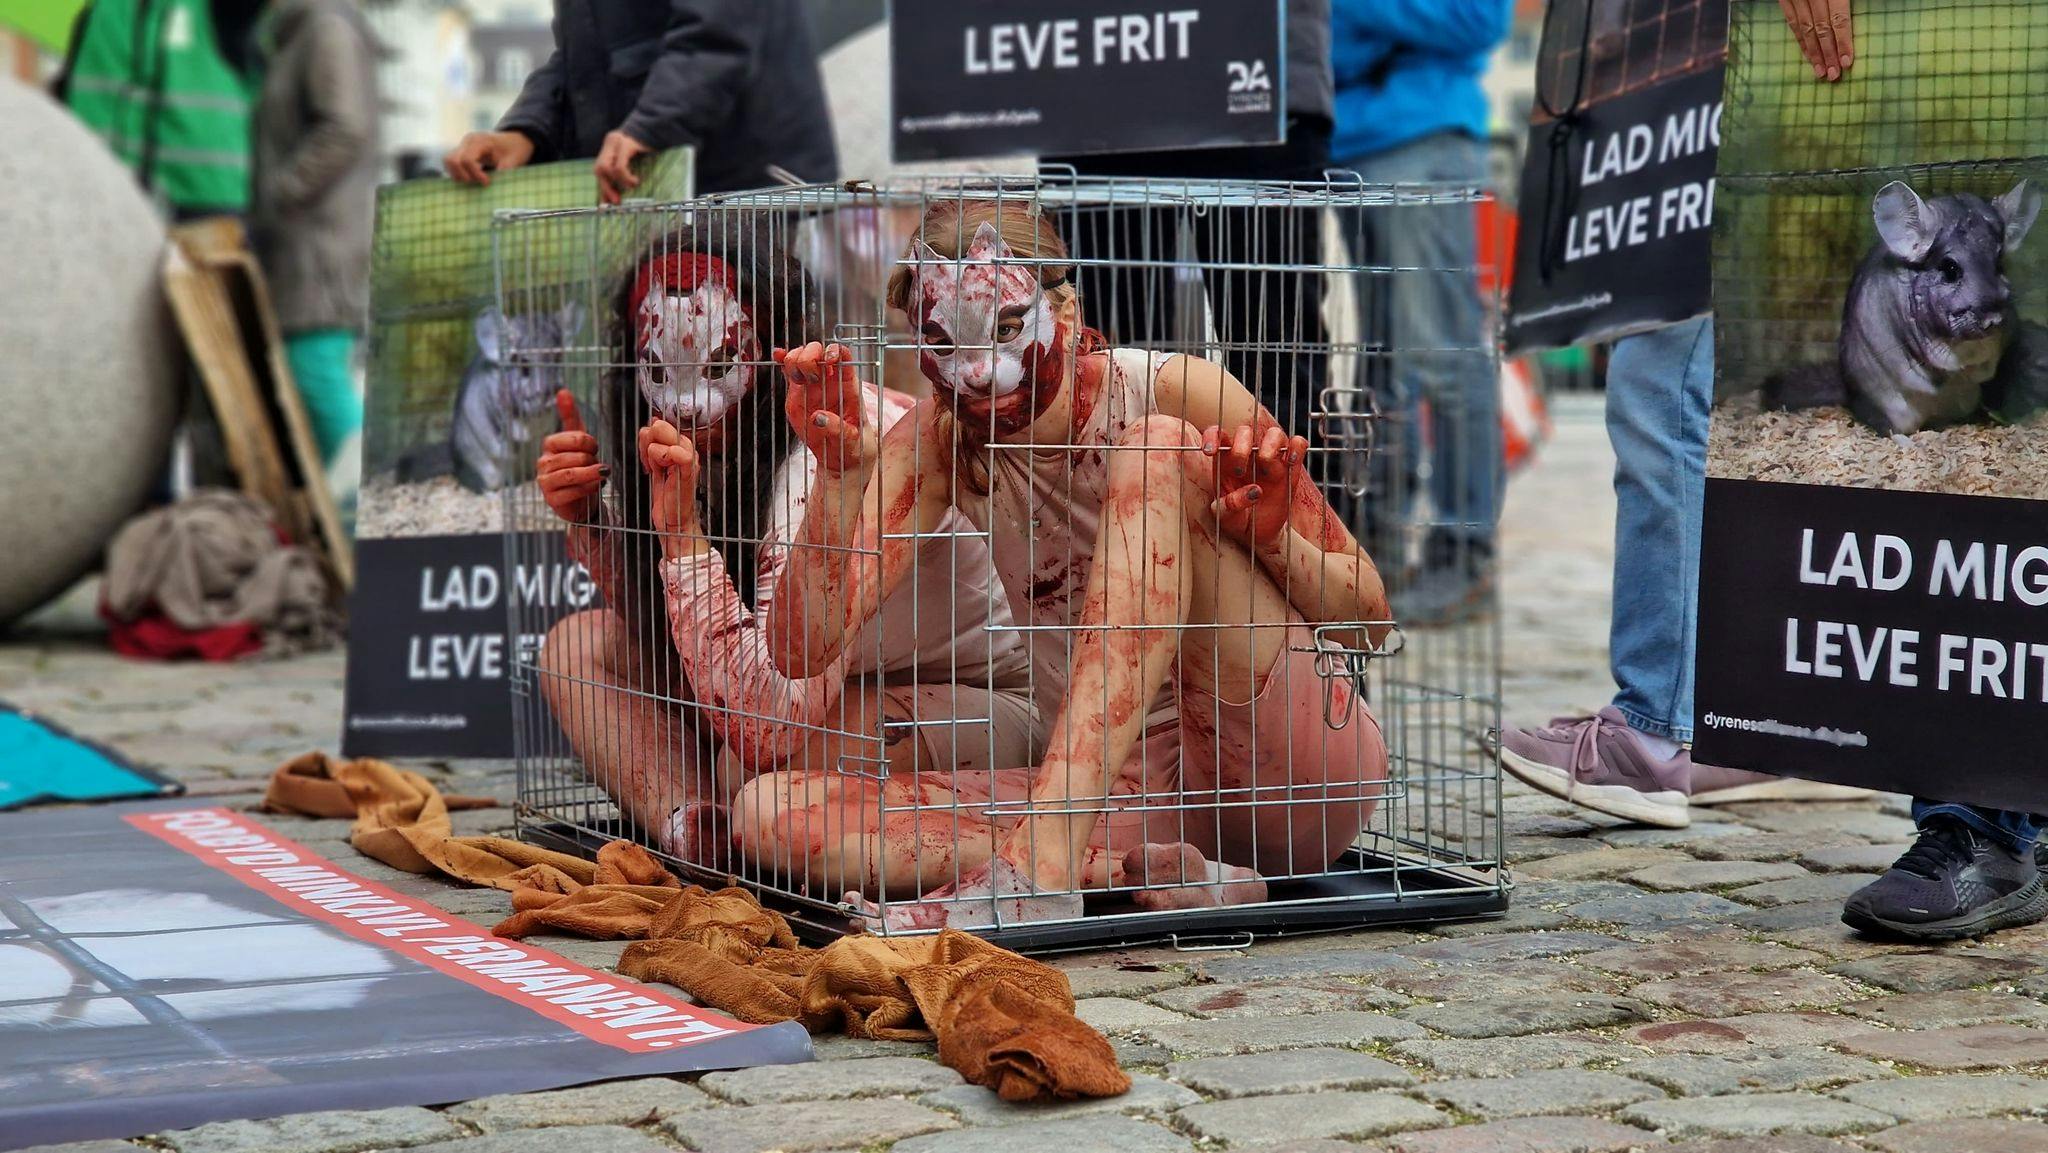 Blodindsmurte mennesker i små bure. Budskabet er ikke til at tage fejl af hos demonstranterne foran Christiansborg, hvor de folkevalgte politikere åbner tinget klokken 12.00.
